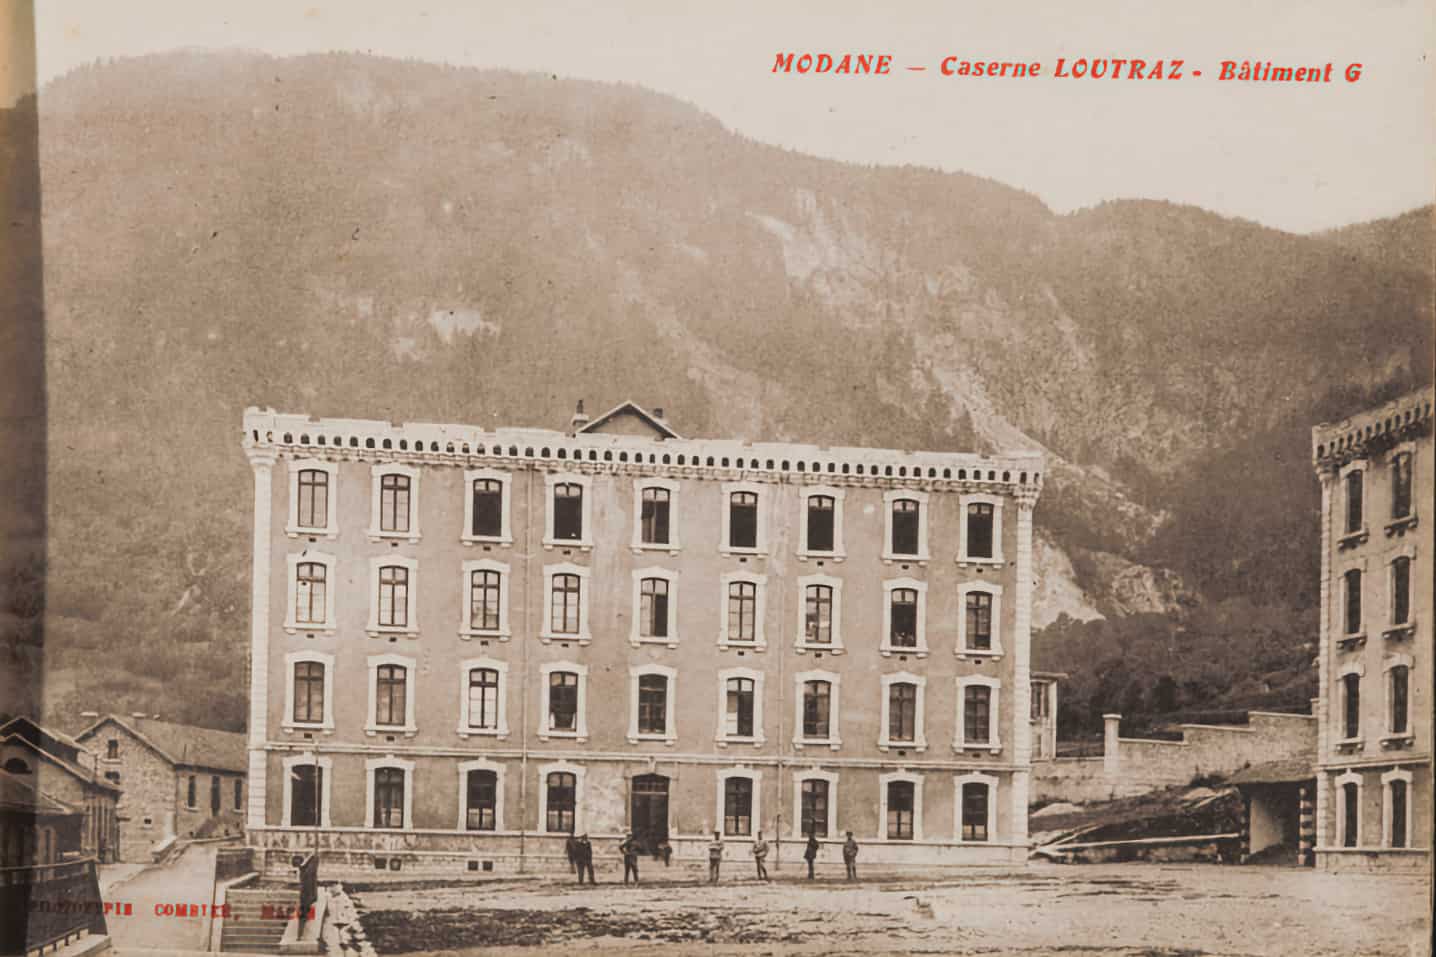 Ligne Maginot - CASERNE LOUTRAZ - (Casernement) - Le bâtiment G
Carte postale
Archives départementales de Savoie - 2FI 7788